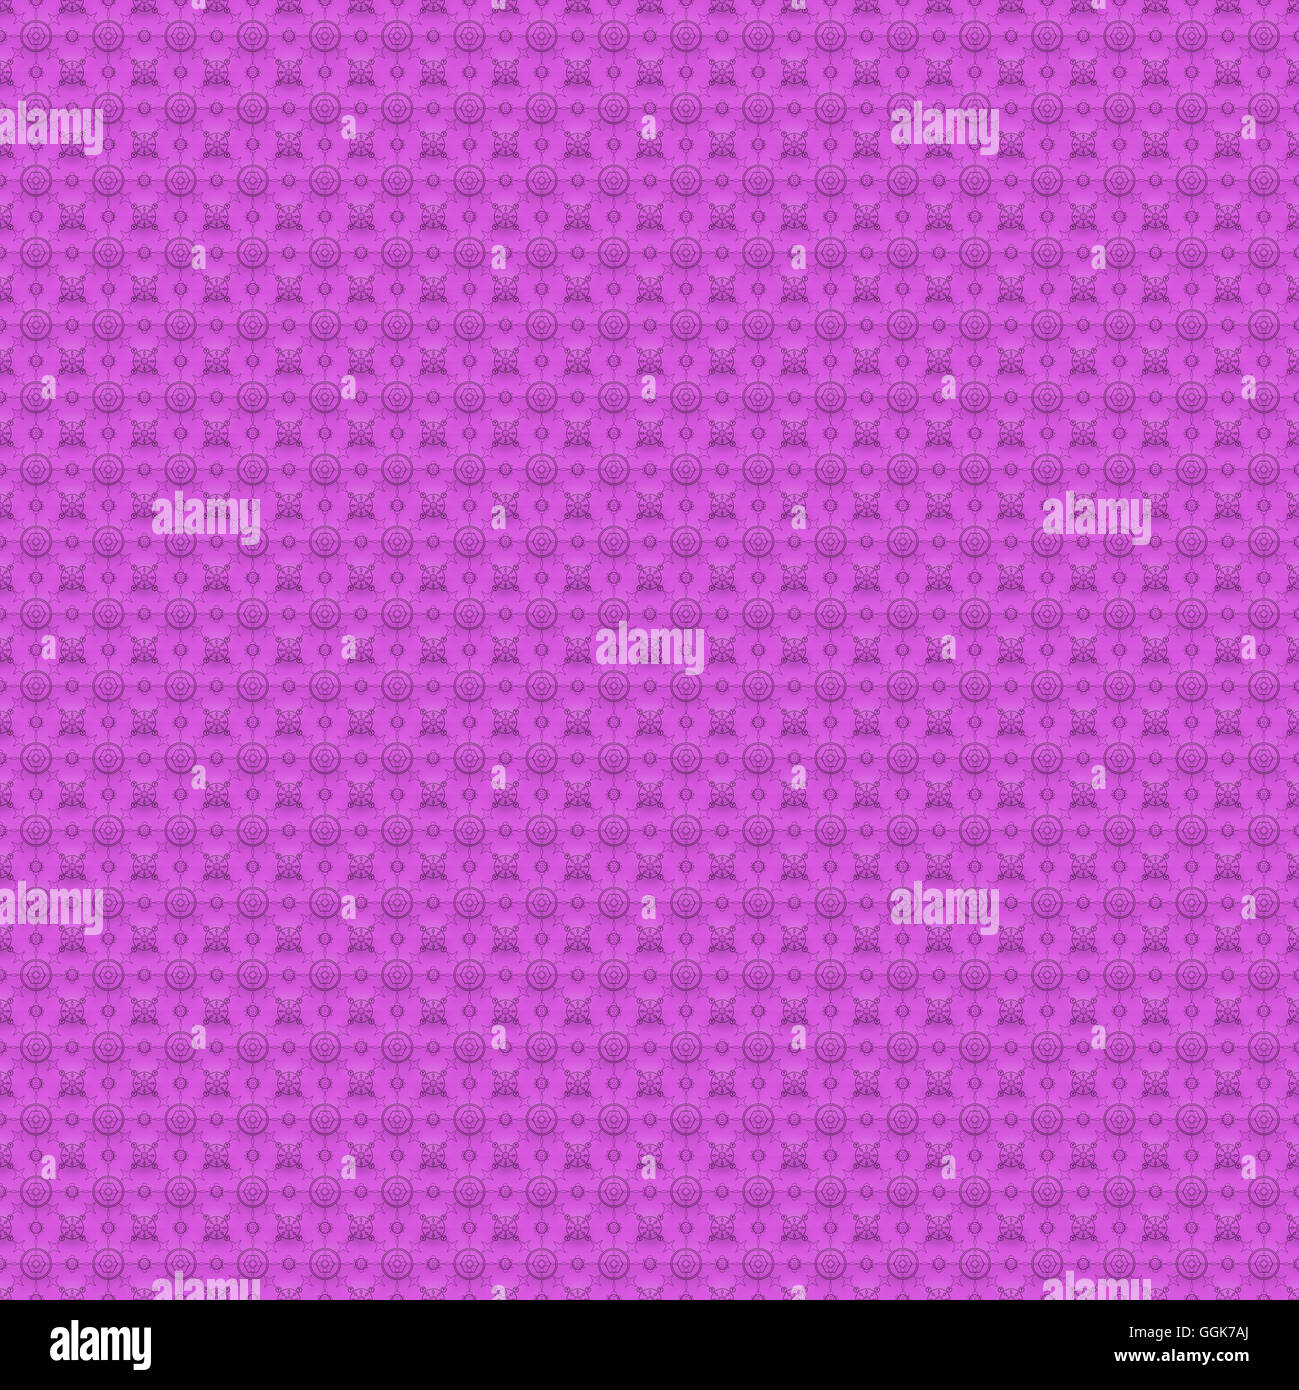 Symmetrische Muster auf rosa Farbe, Digital erstellt für die Verwendung als Web-Hintergrund Stockfoto